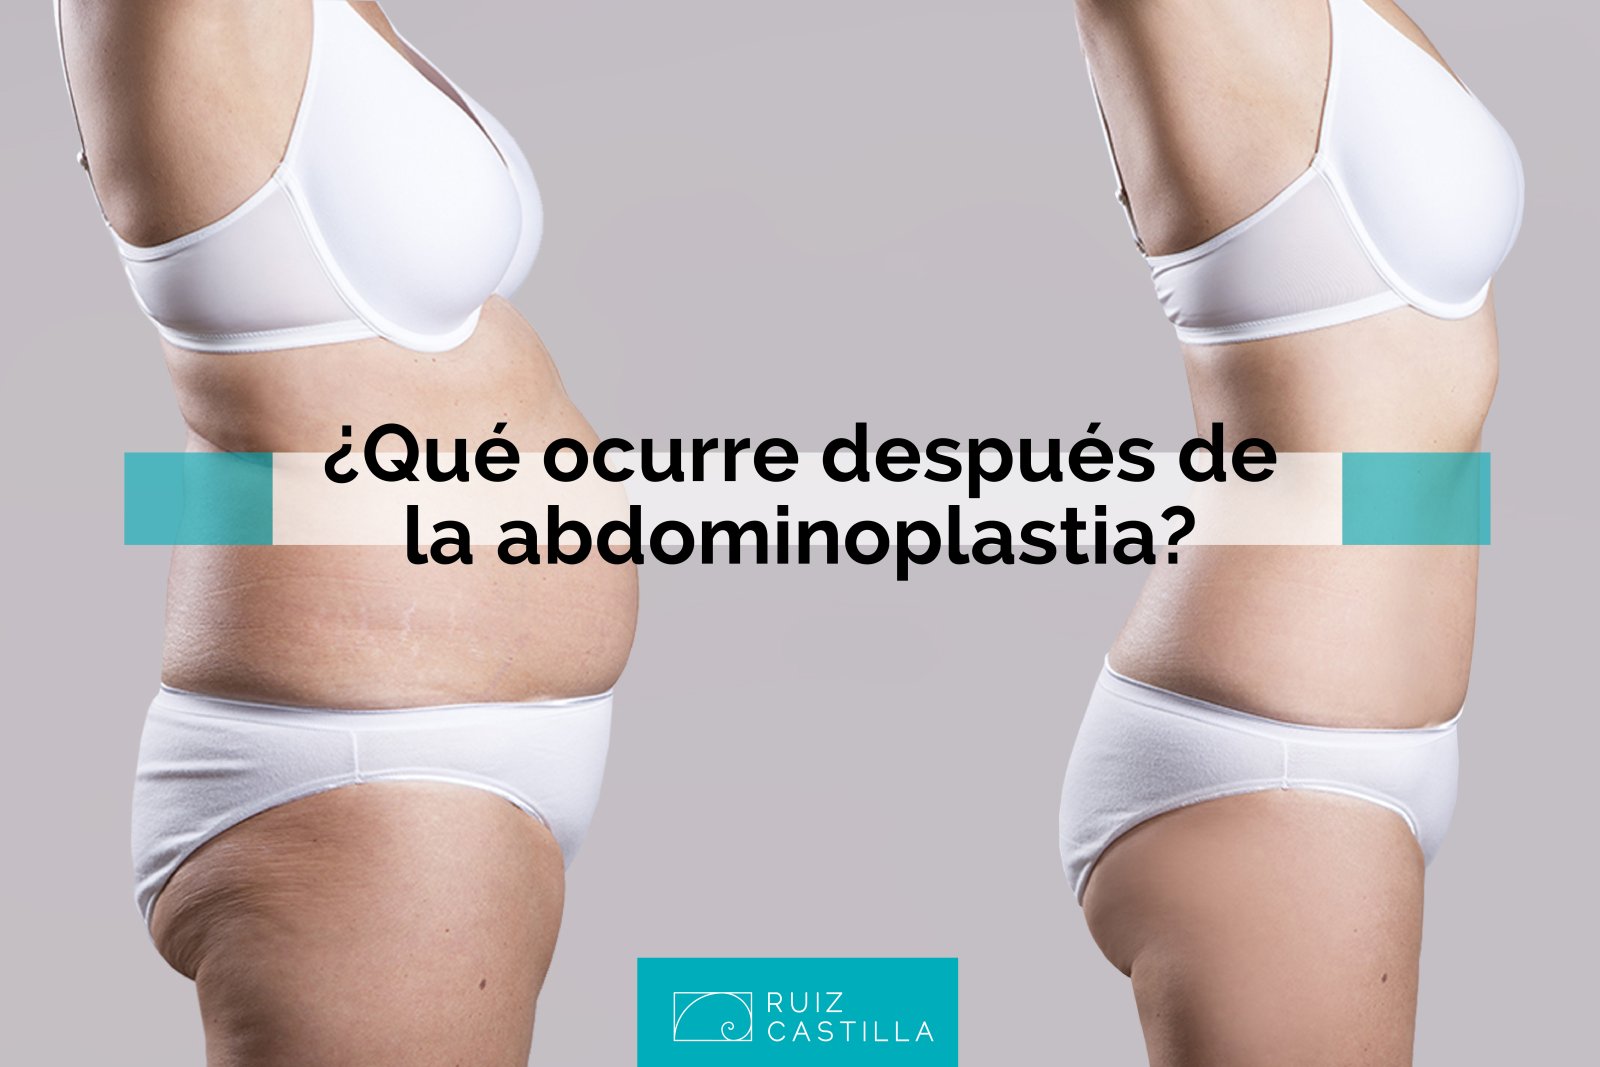 Qué es una abdominoplastia y cómo se realiza? - Clínica Uribe